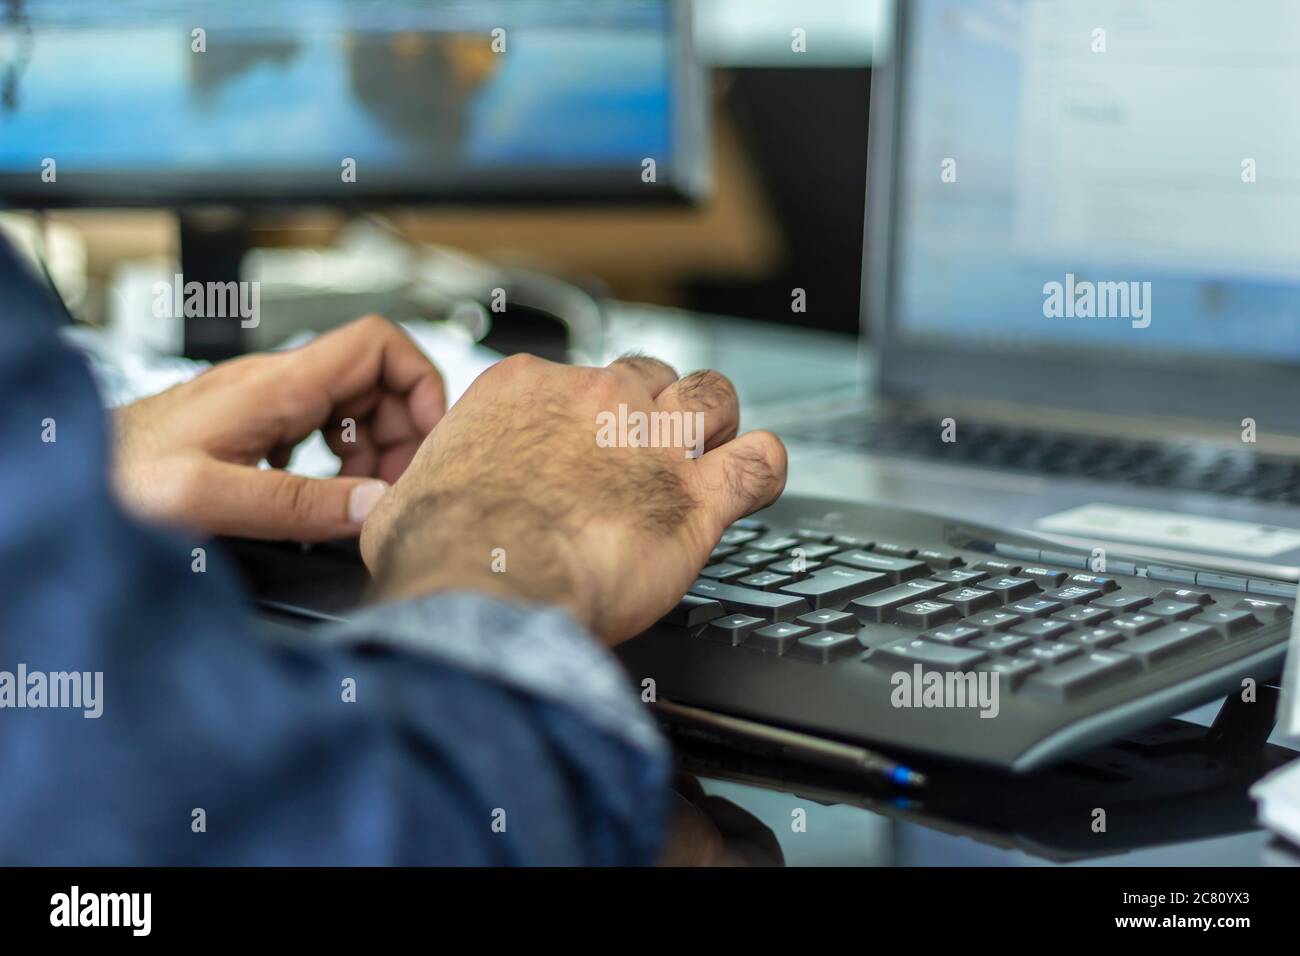 Business Lifestyle ein Mann, der auf dem Laptop tippt. Laptop, Büro, Hand, Bildschirm, Tastatur Stockfoto